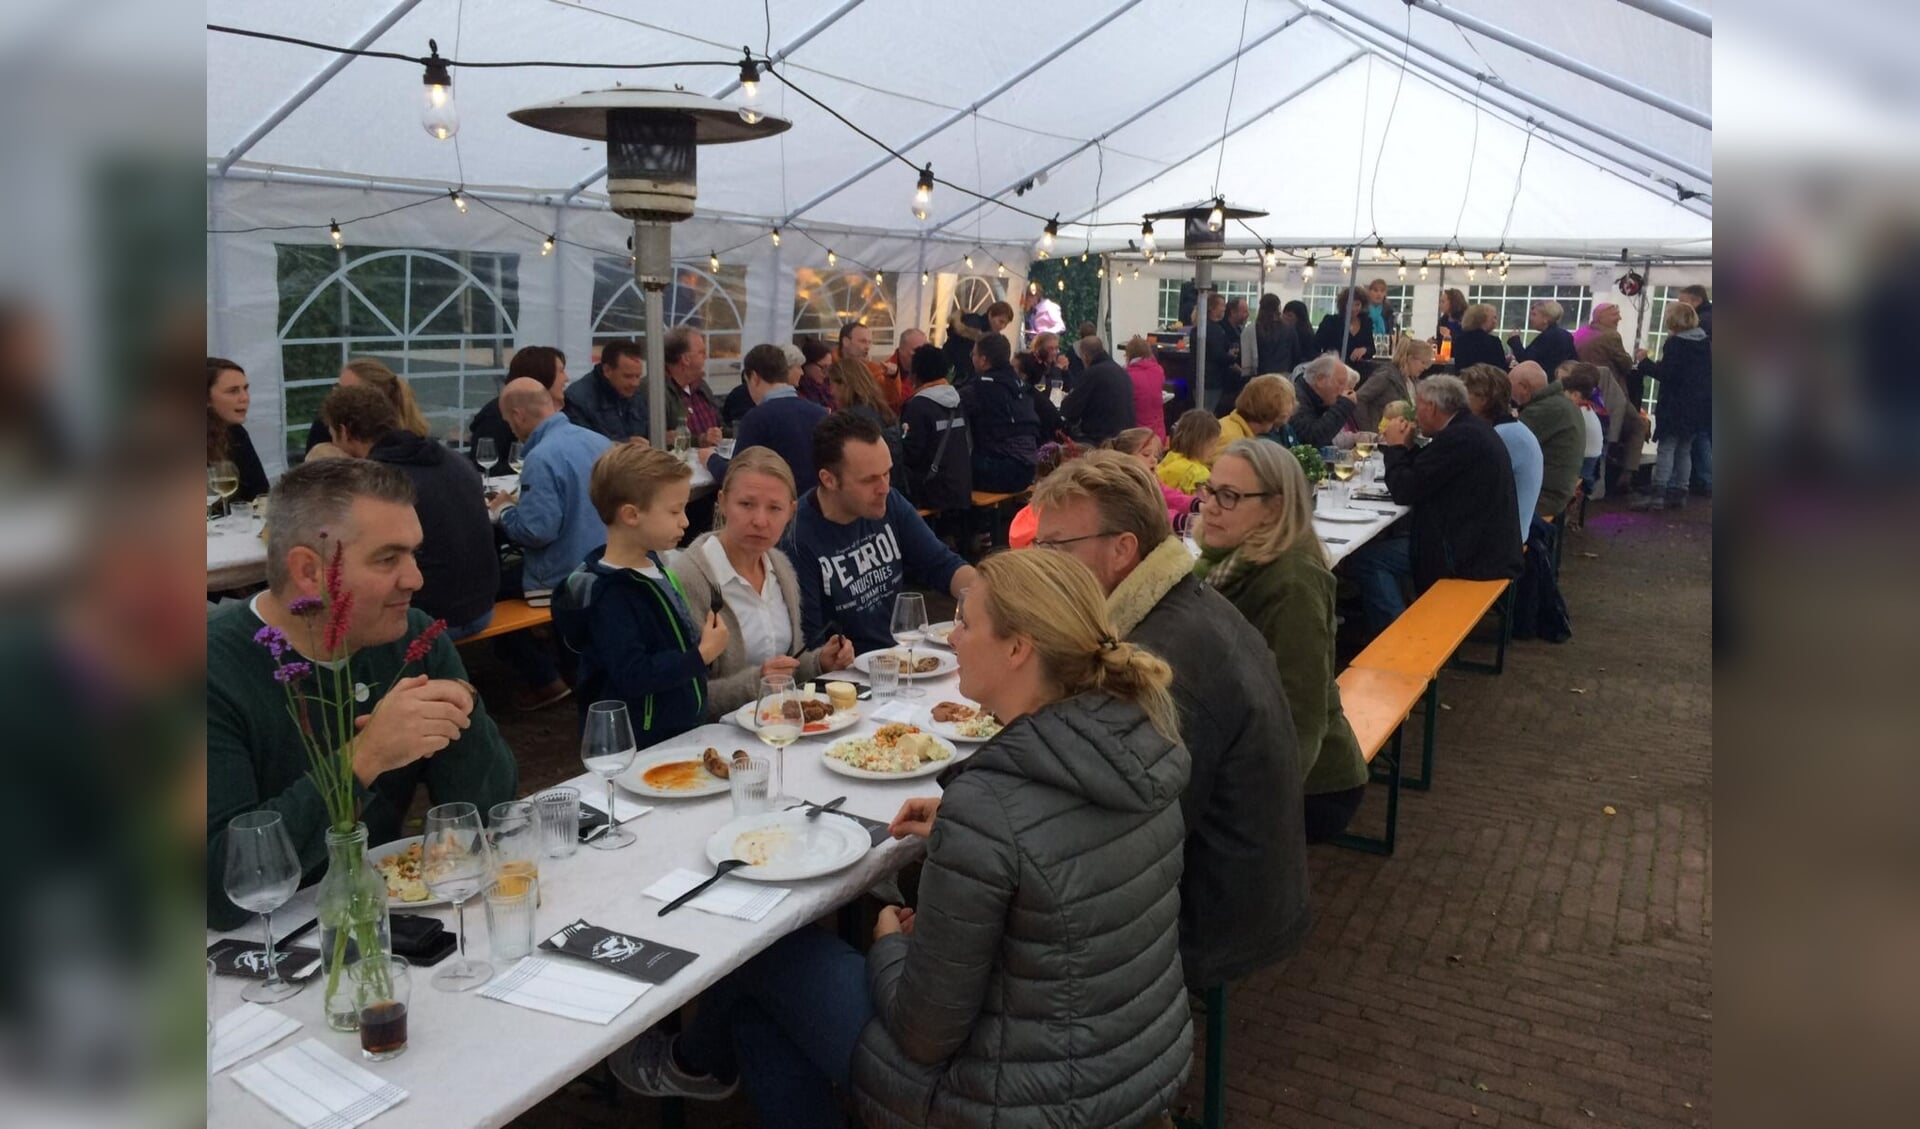 Hollandsche Rading tekent voor een zeer geslaagd culinair burenfeestje.